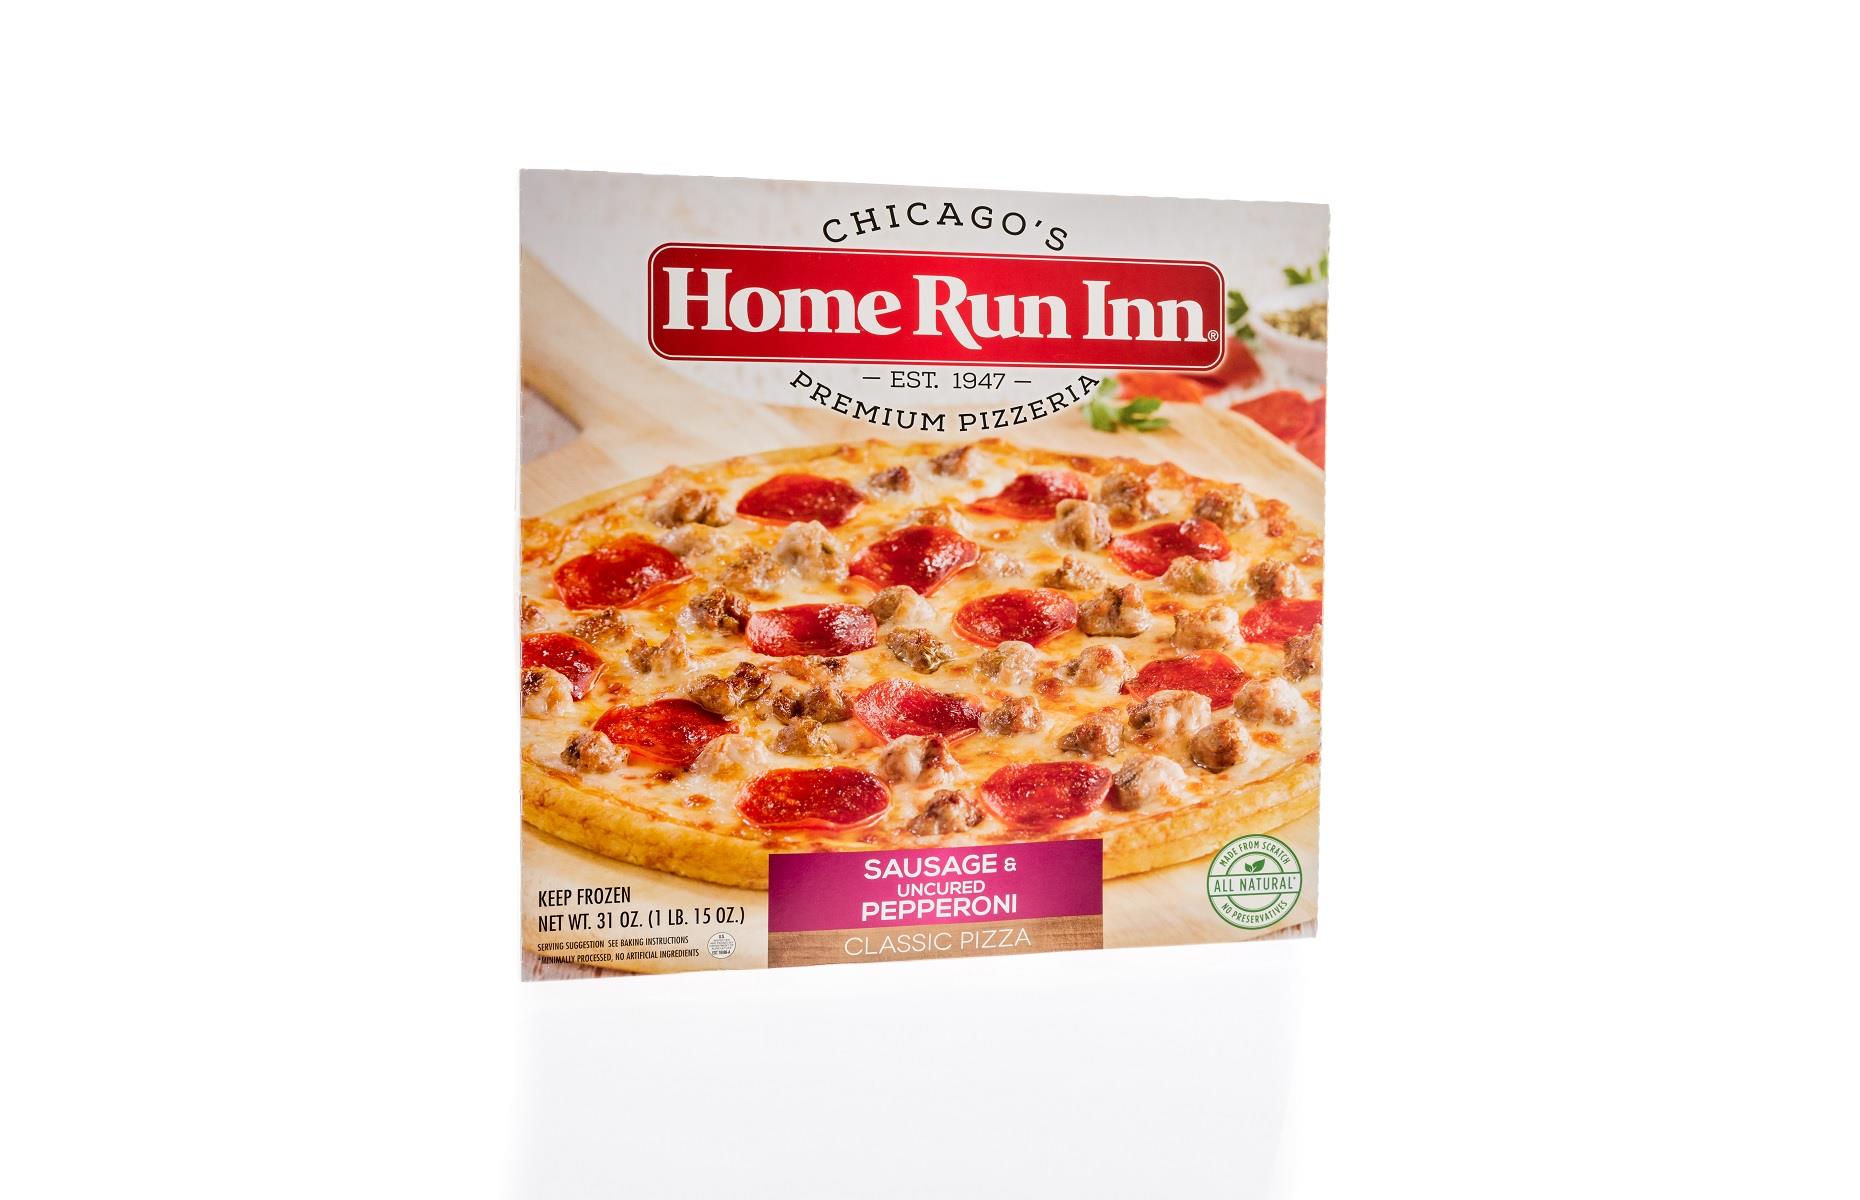 Home Run Inn frozen meat pizza: thousands of units